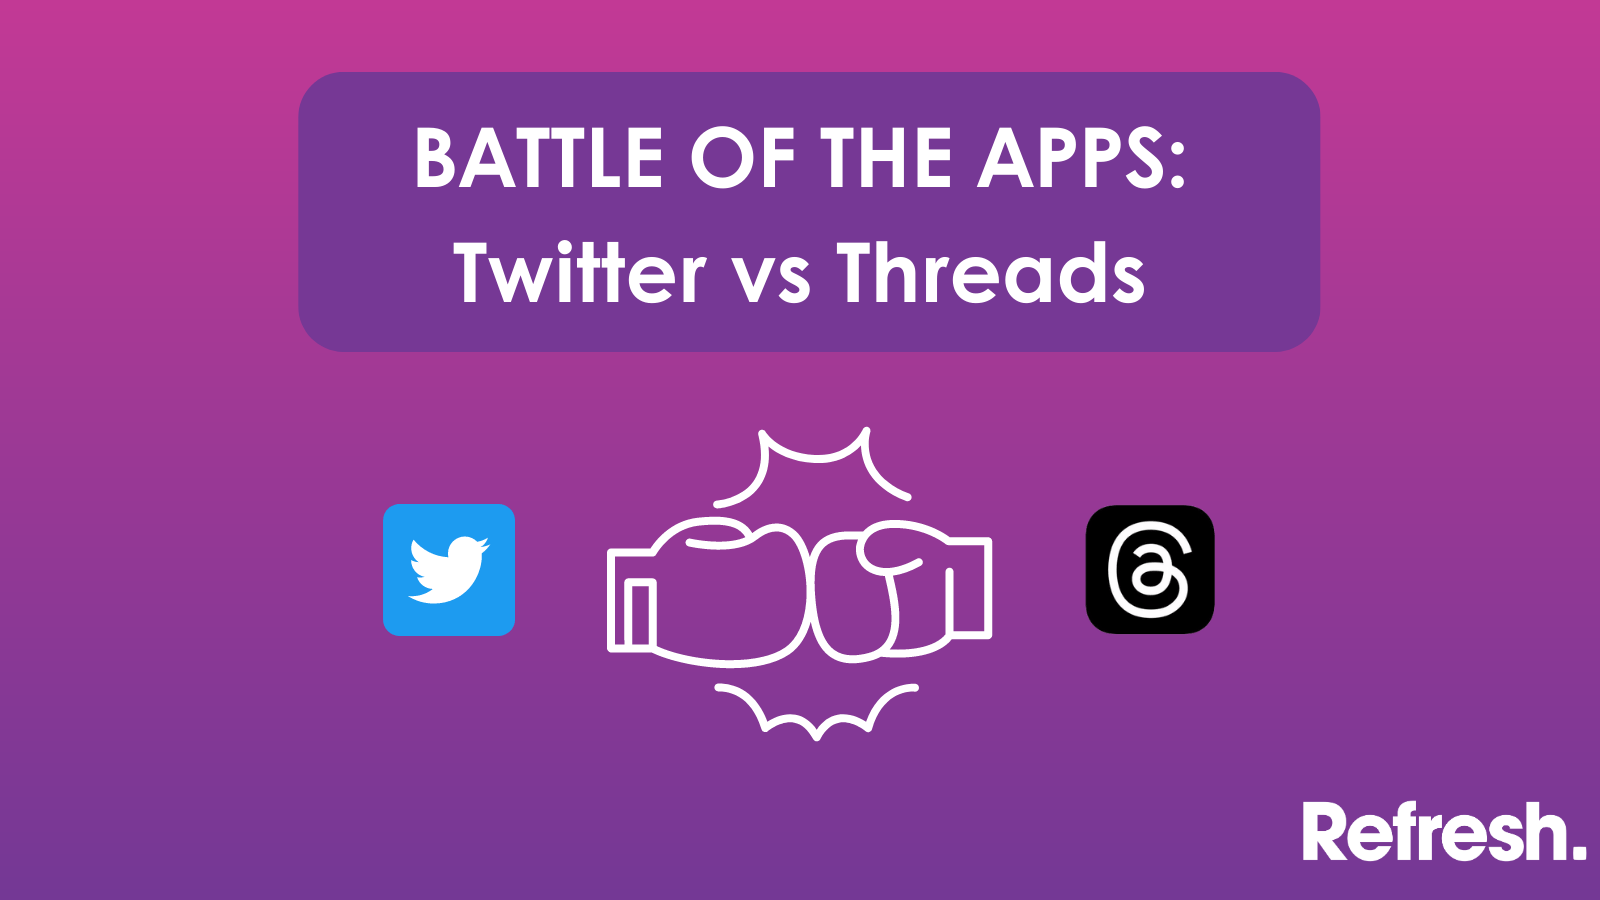 Battle of the apps: Twitter vs Threads